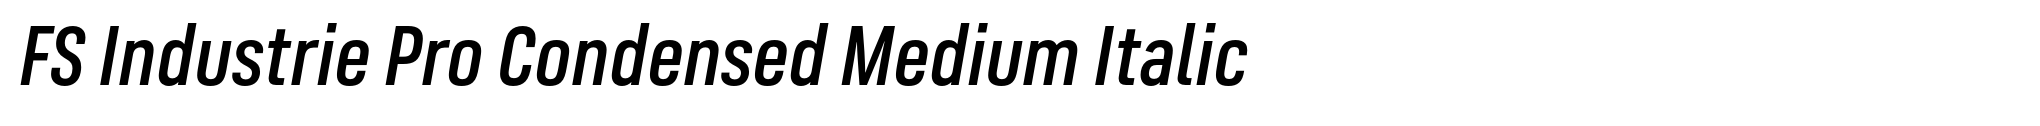 FS Industrie Pro Condensed Medium Italic image